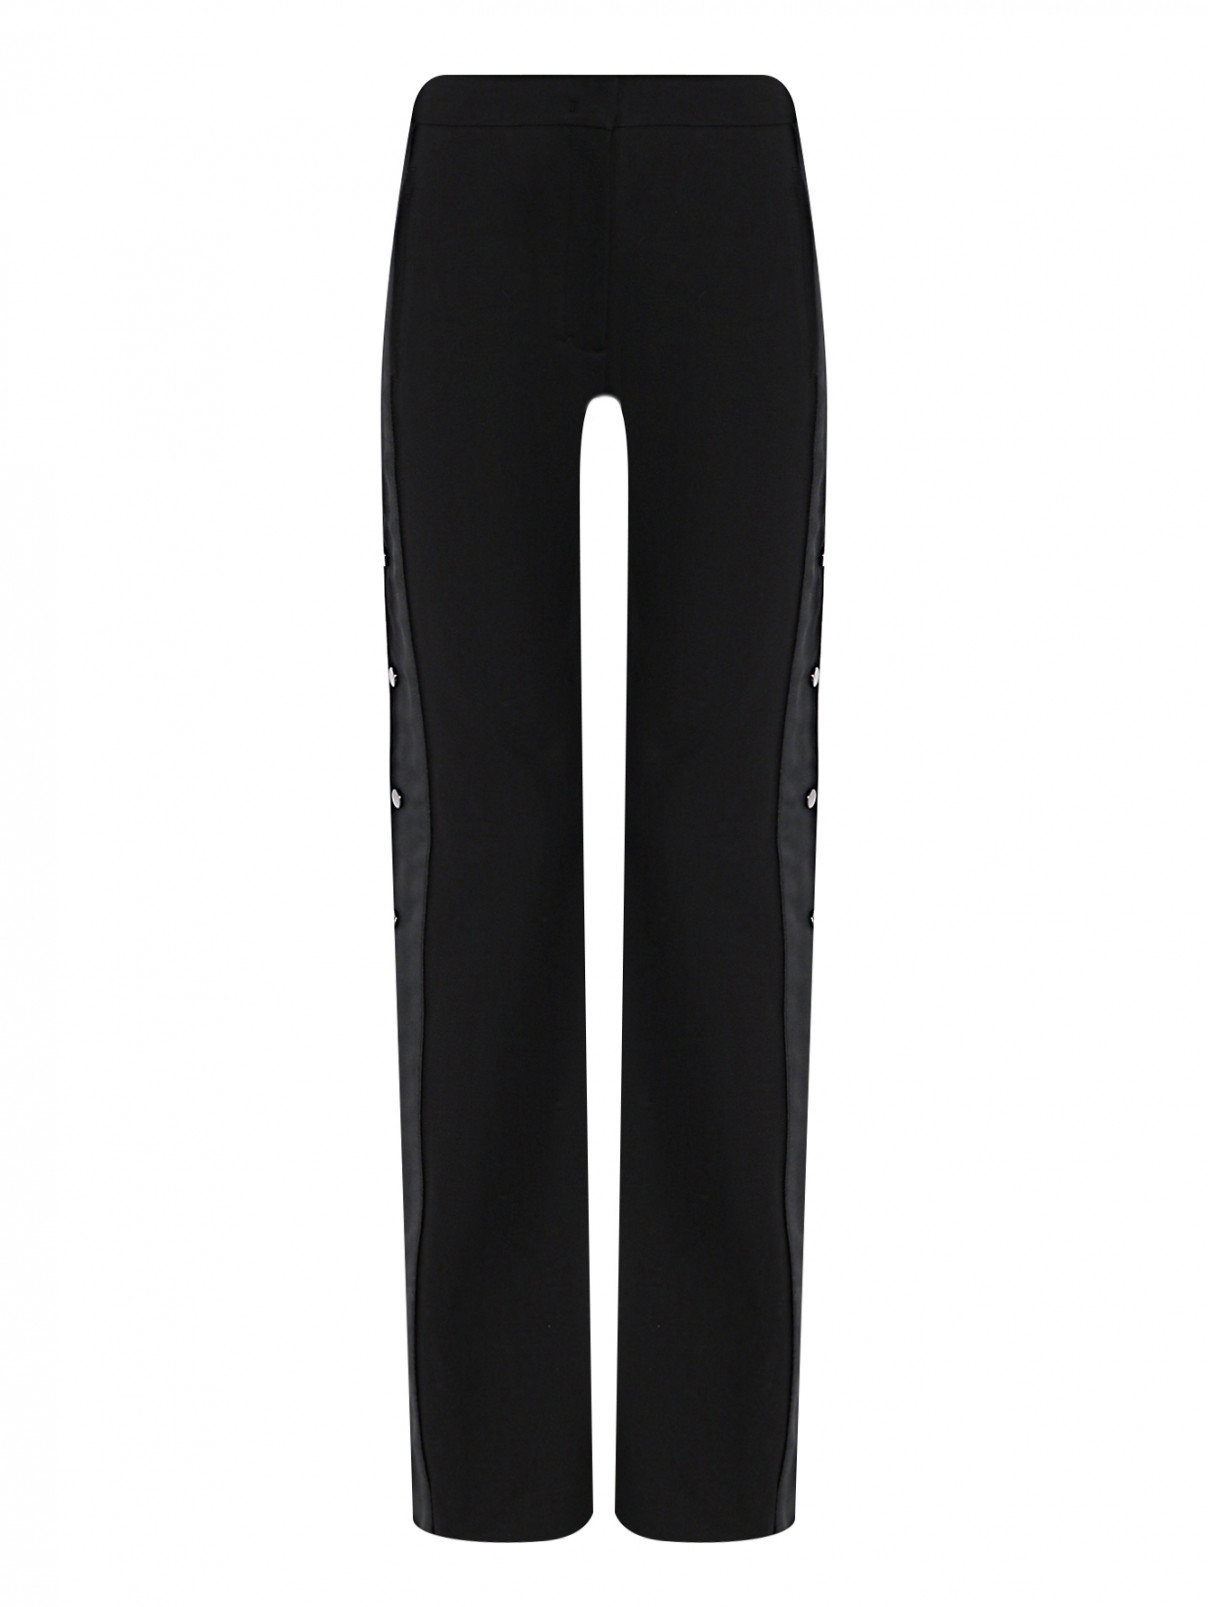 Трикотажные брюки с лампасами Dorothee Schumacher  –  Общий вид  – Цвет:  Черный